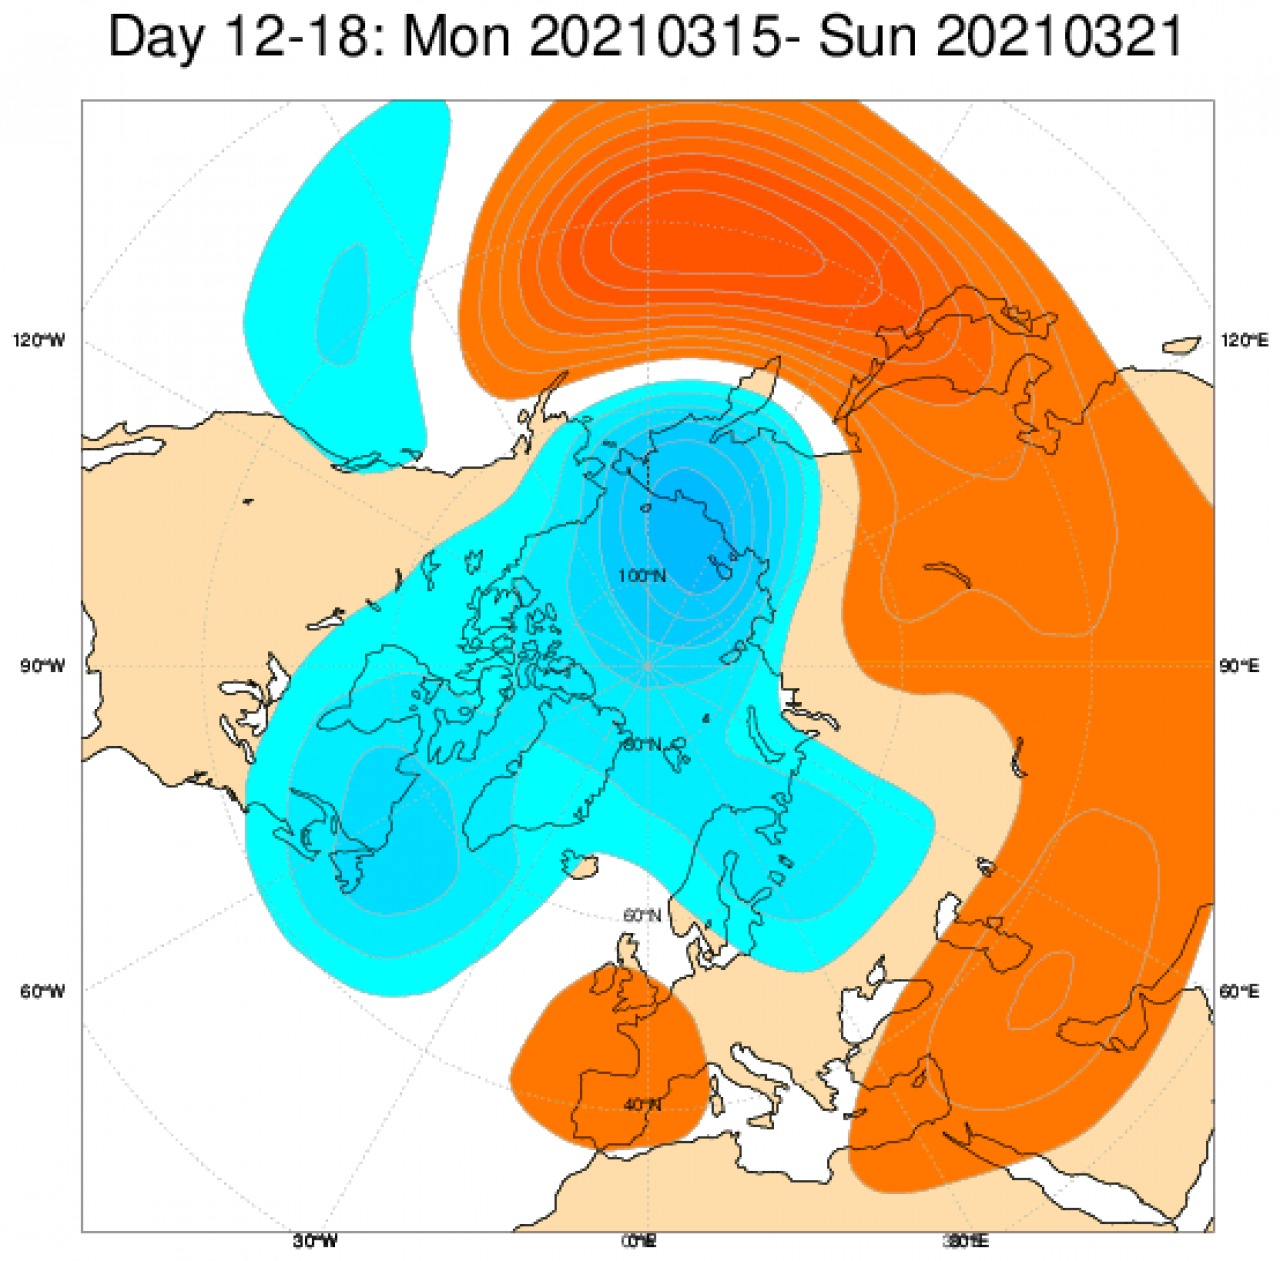 Le anomalie di geopotenziale secondo il modello ECMWF in Europa mediate nel periodo 15-21 marzo